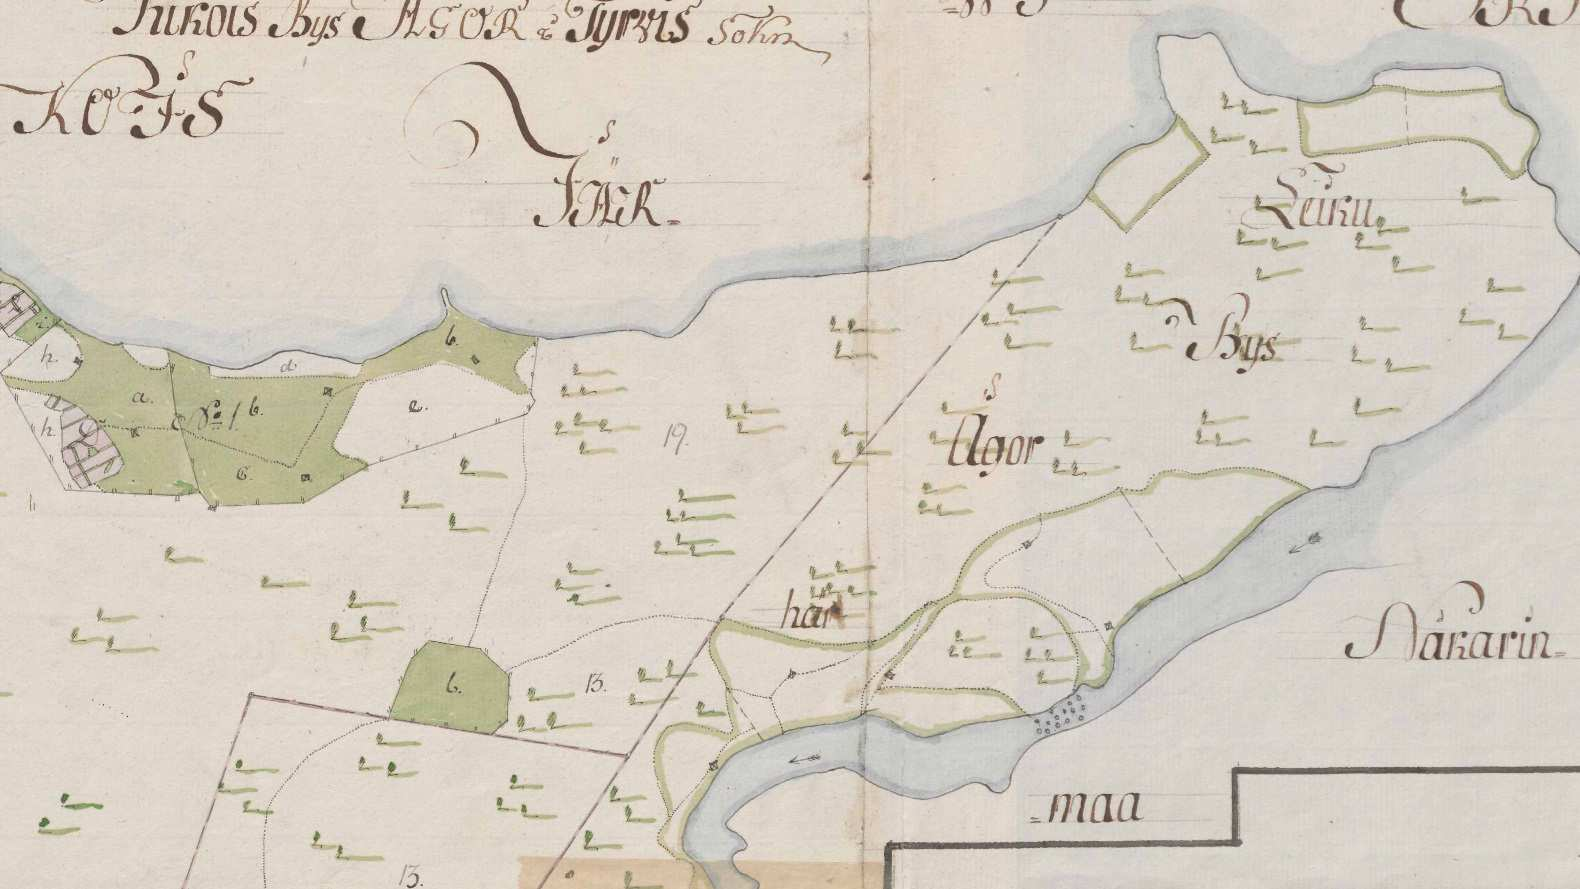 Ote isojakokartasta (Limon & Tesslair 1780, 1796), johon Murajannokan rajamerkki on merkitty